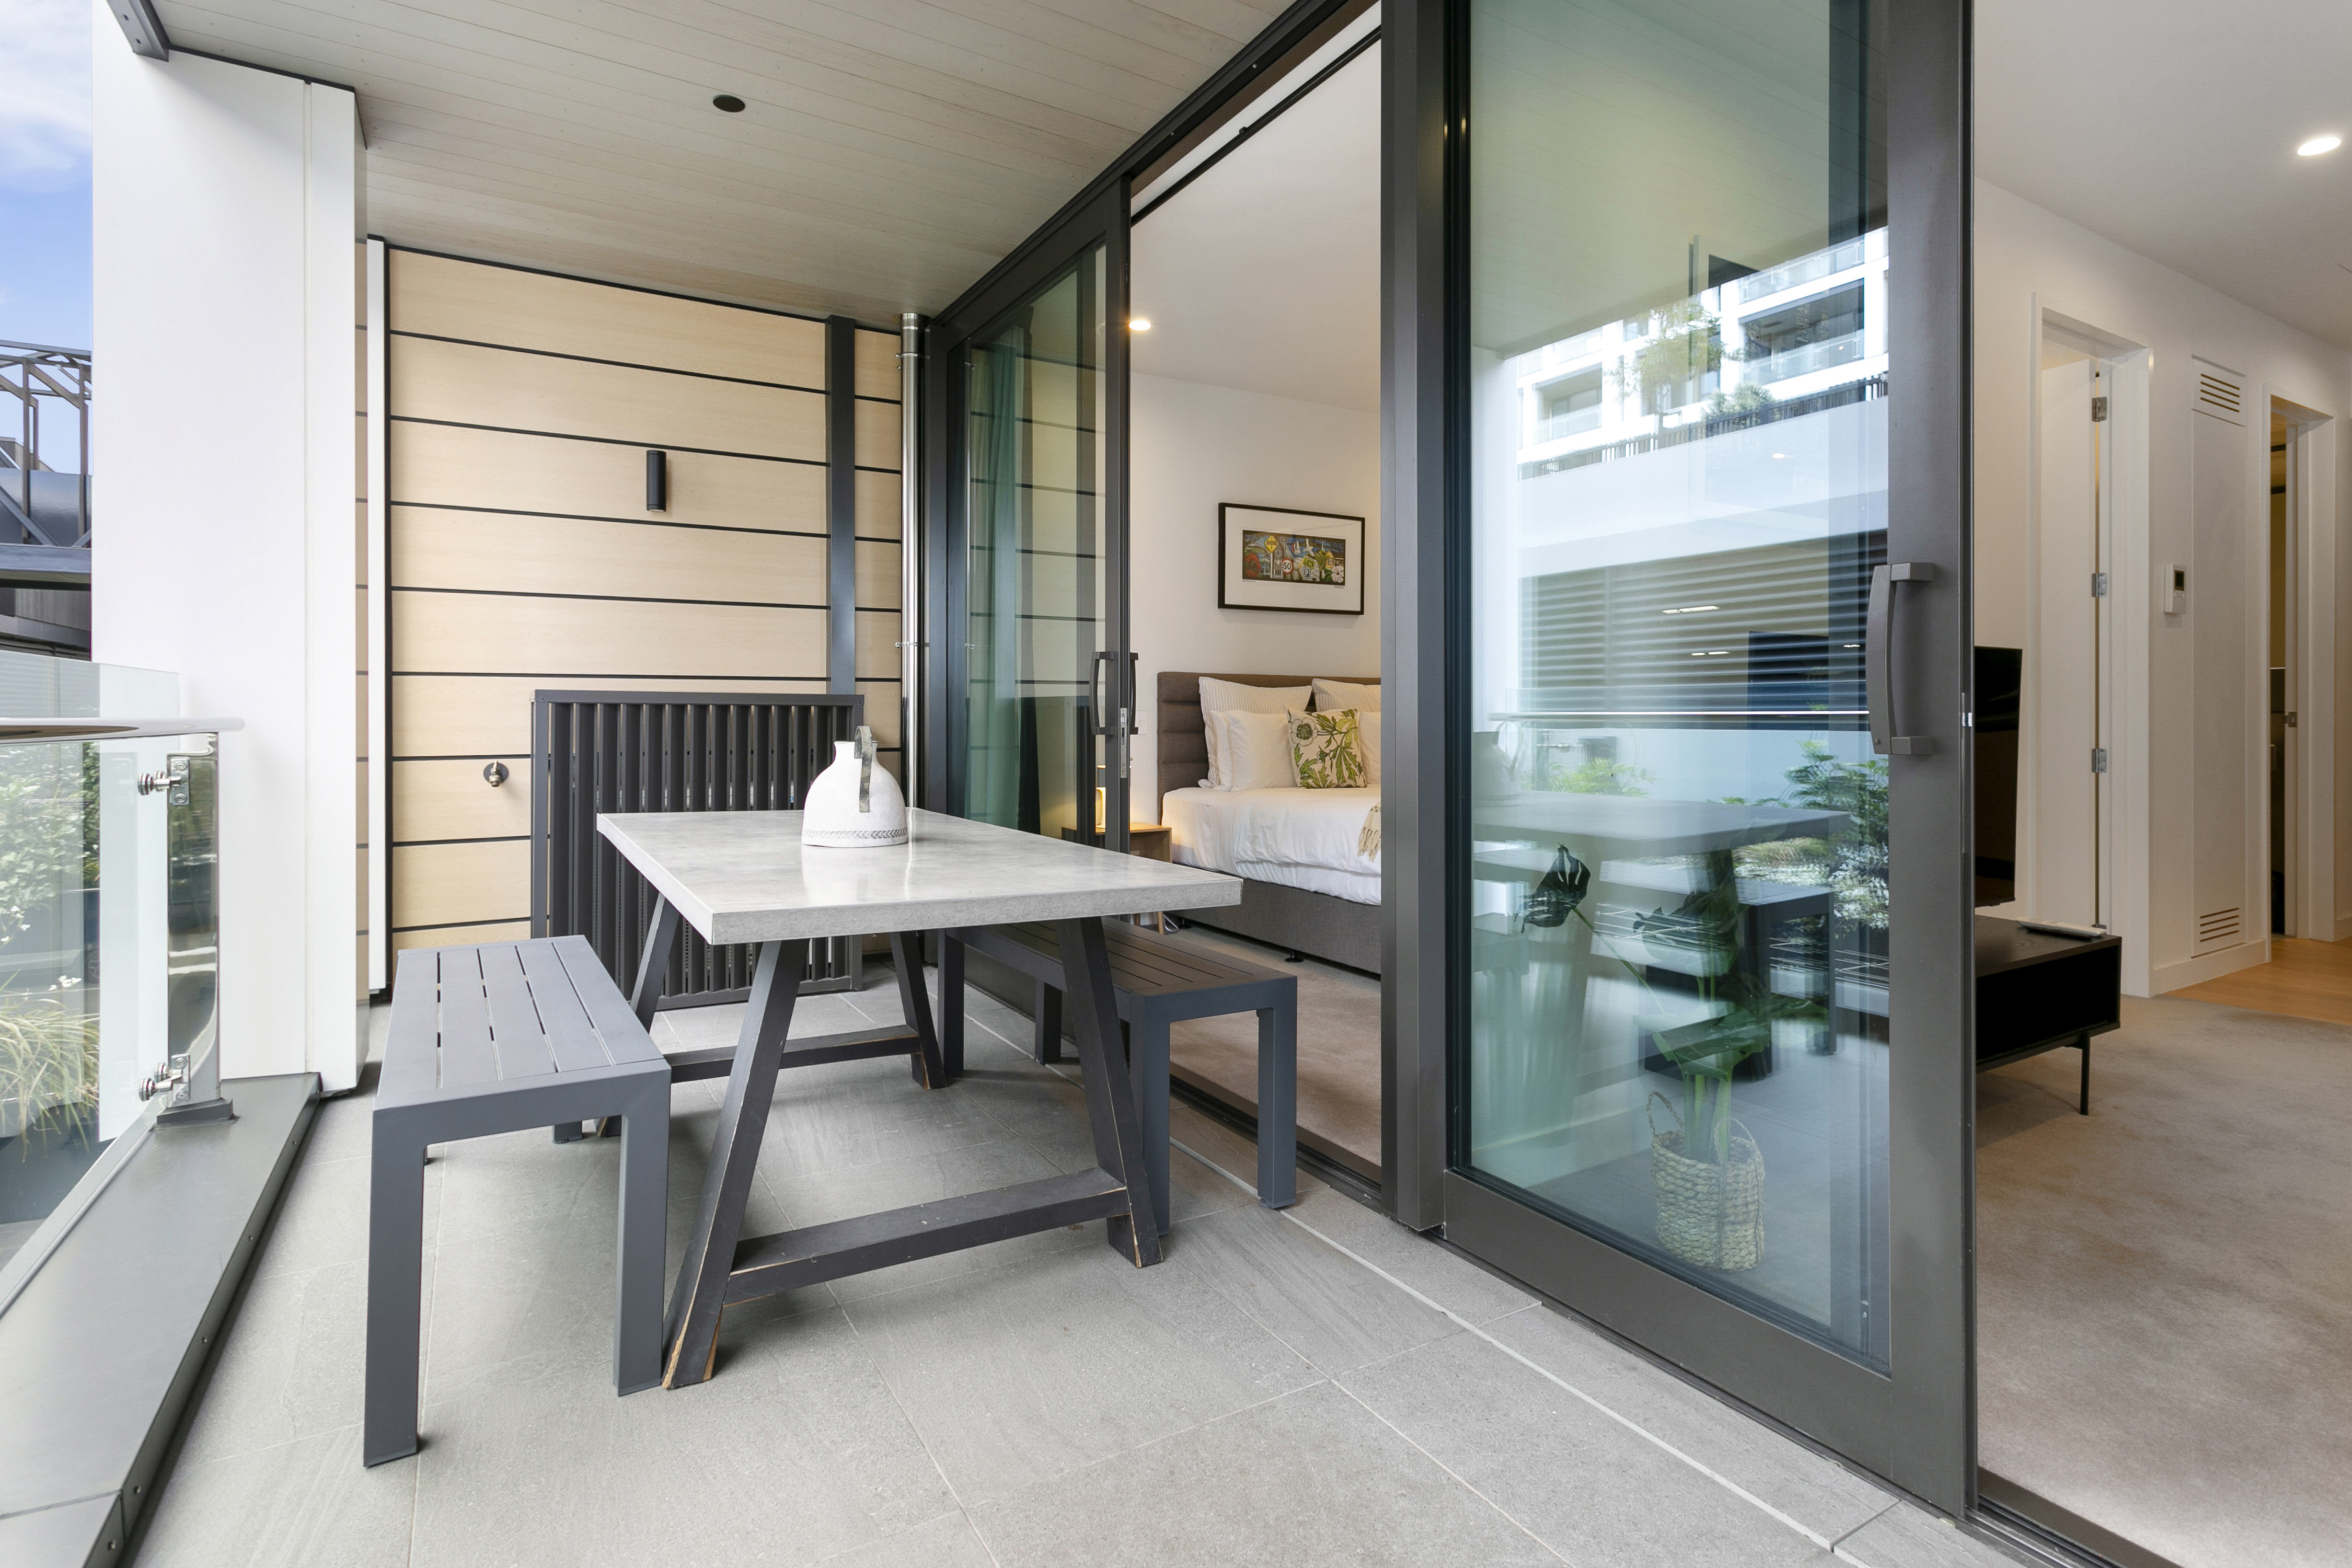 Balcony - Wynyard Quarter Apartments by Urban Rest - Auckland, New Zealand